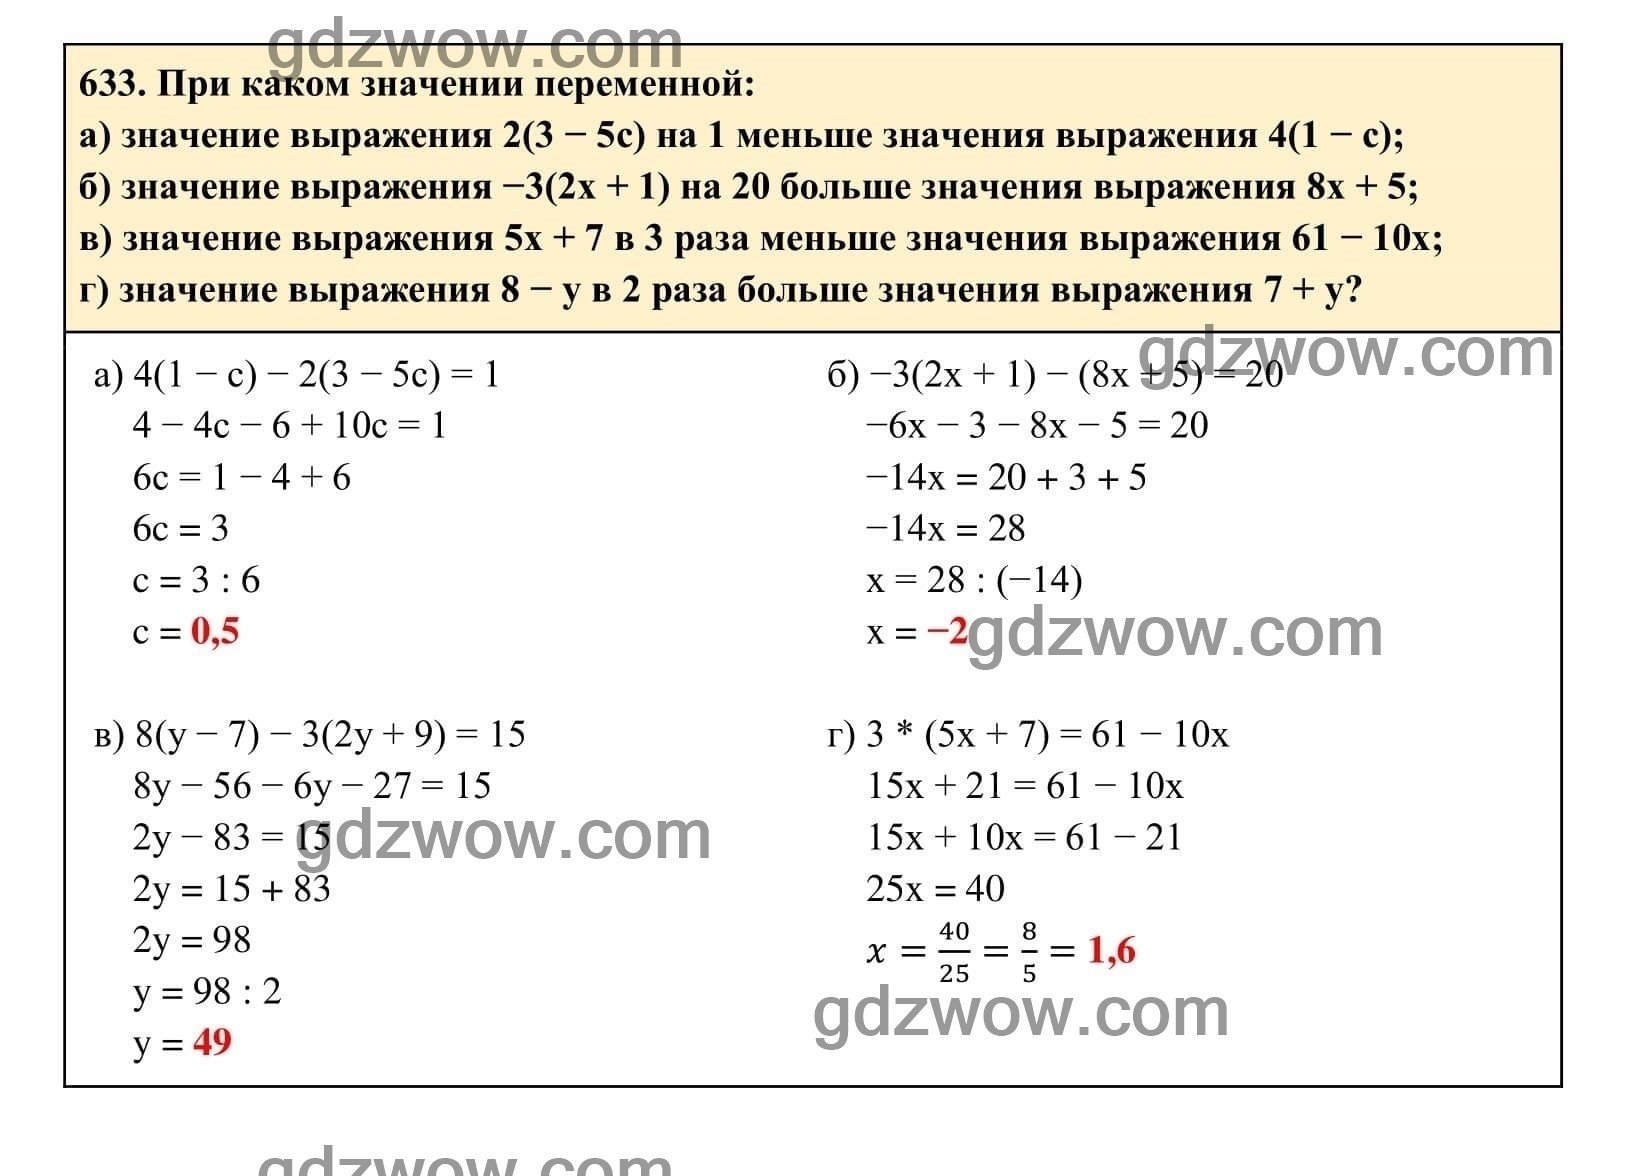 Упражнение 633 - ГДЗ по Алгебре 7 класс Учебник Макарычев (решебник) - GDZwow